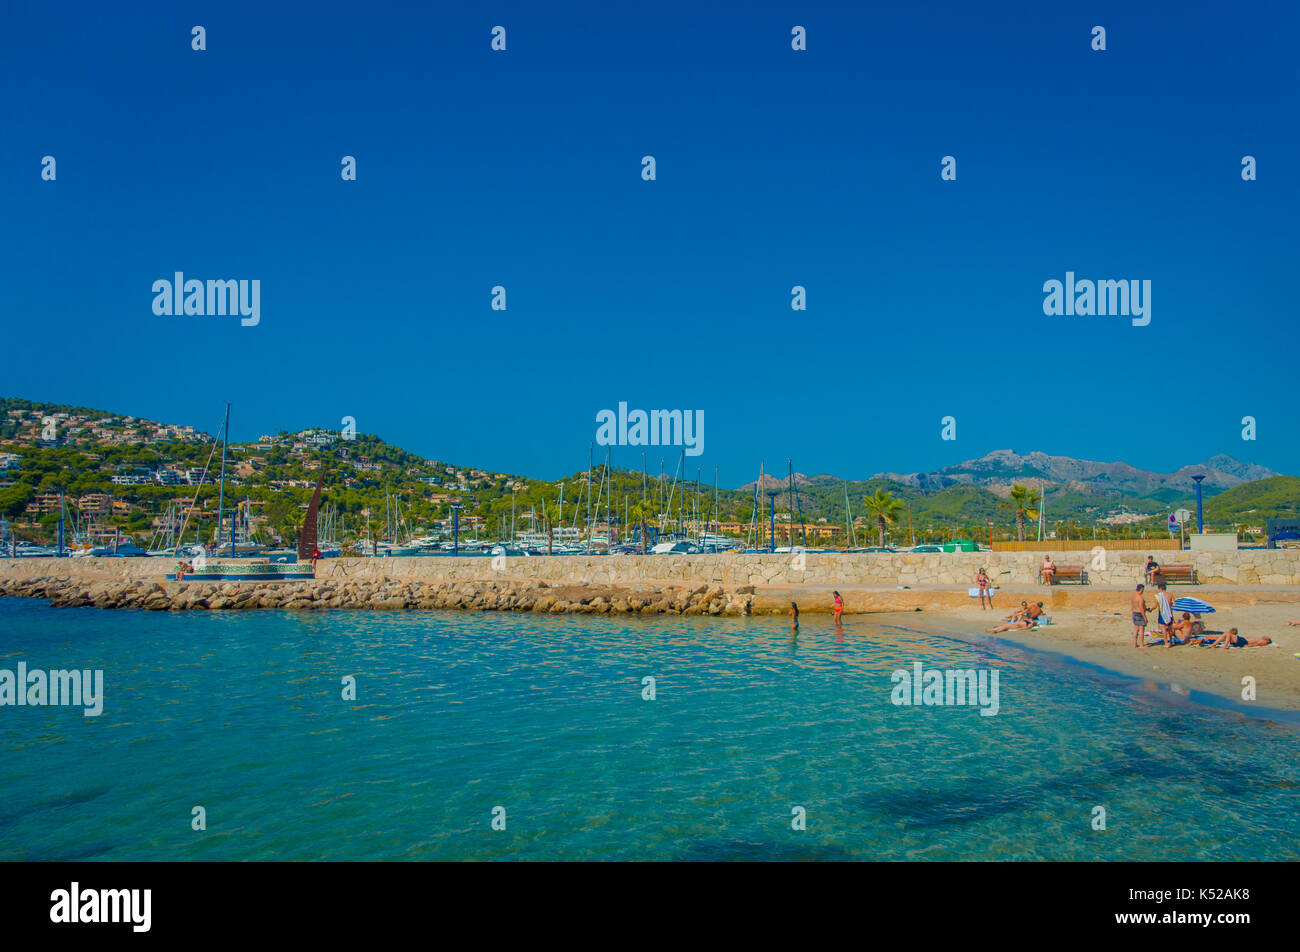 PORT D ANDRATX, SPANIEN - 18. AUGUST 2017: Unbekannter Menschen genießen den Strand in Port Andratx auf Mallorca Balearen, an einem sonnigen Tag, Spanien Stockfoto